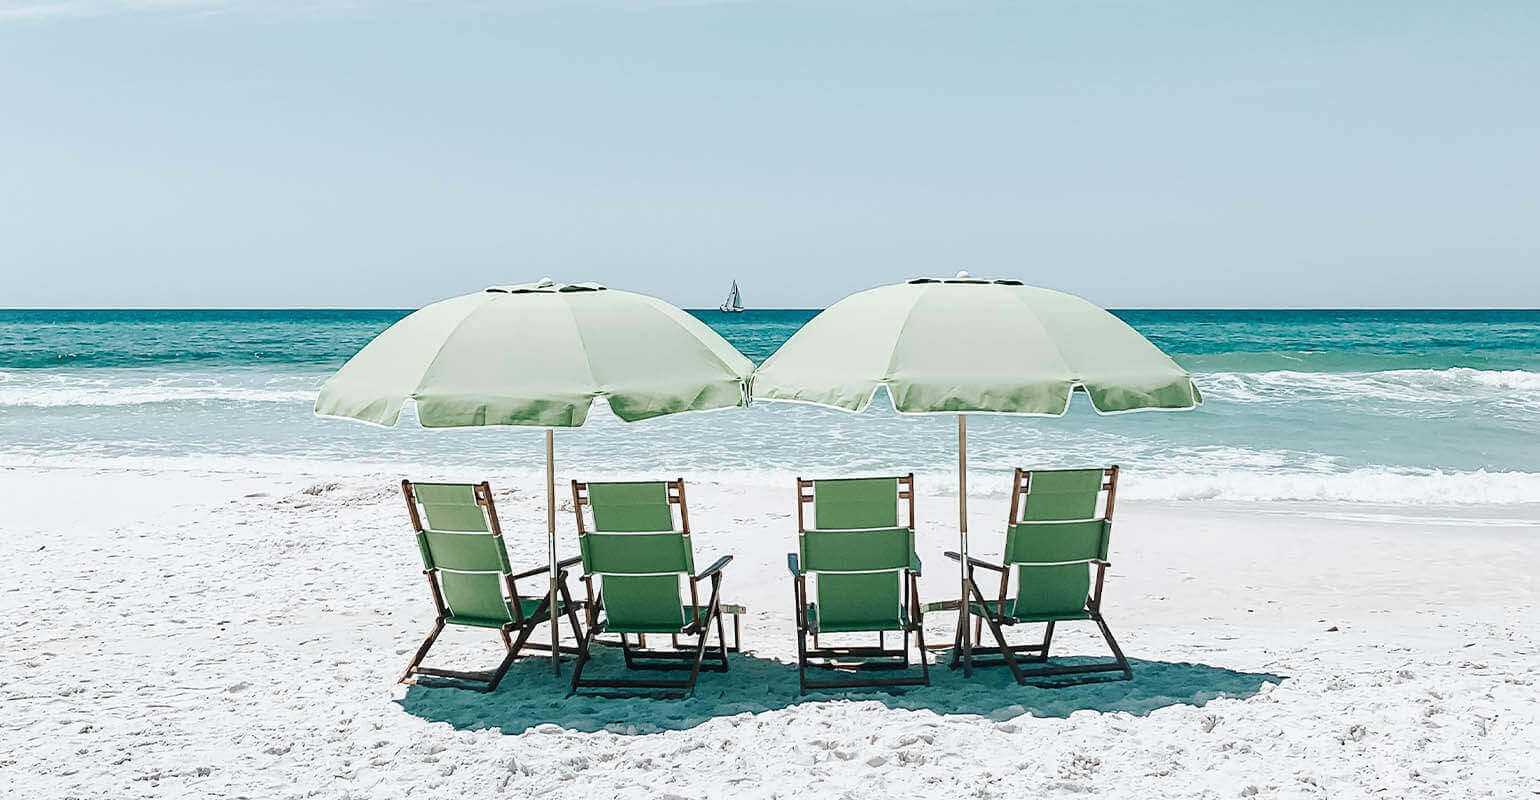 รูปภาพถ่ายของเก้าอี้สีเขียวภายใต้ร่มบนทรายชายหาด